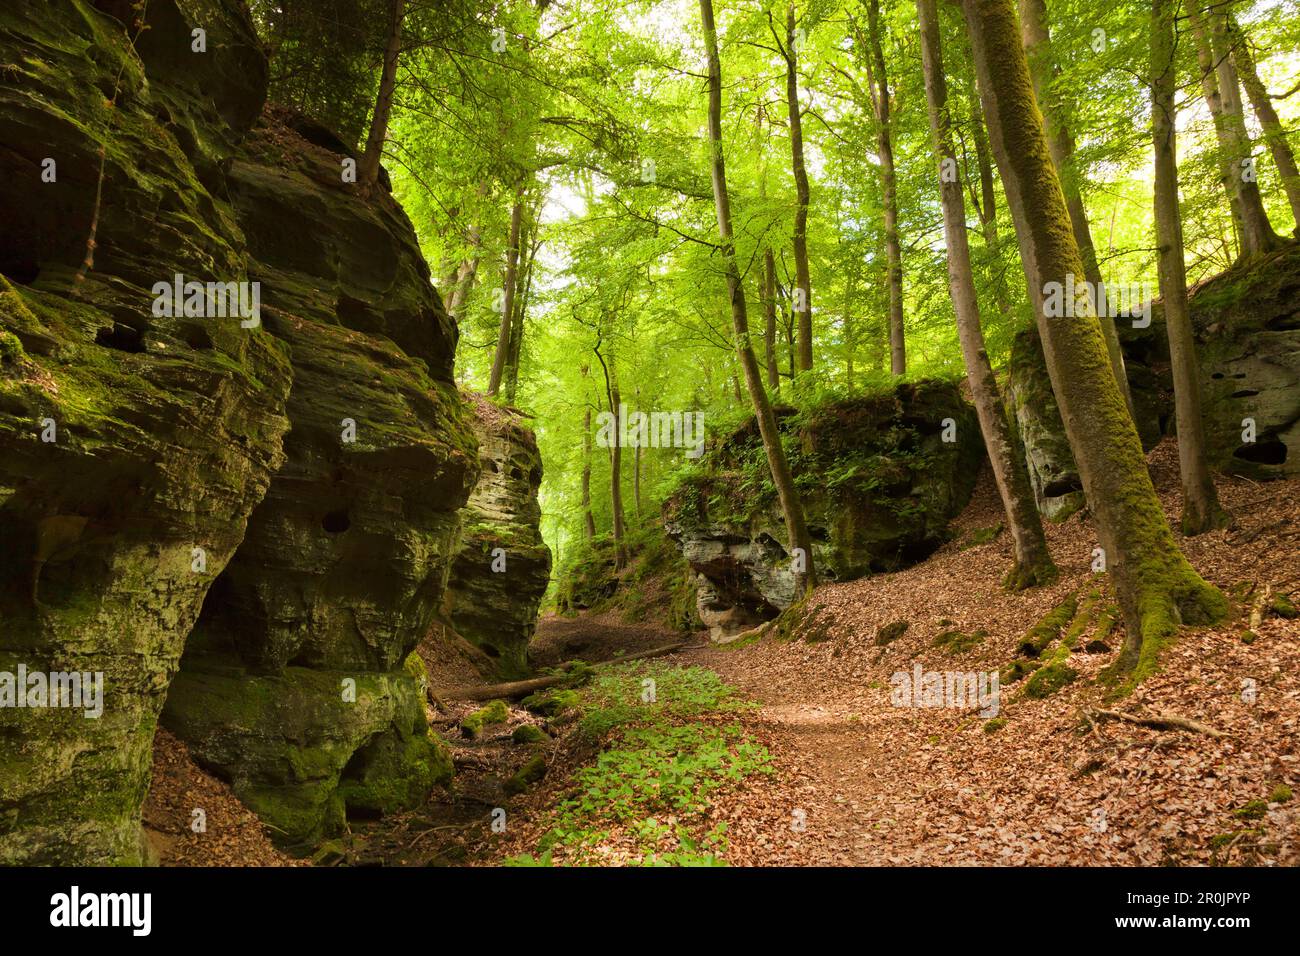 Rock formation Schweinestaelle, near Bollendorf, nature park Suedeifel, Eifel, Rhineland-Palatinate, Germany Stock Photo